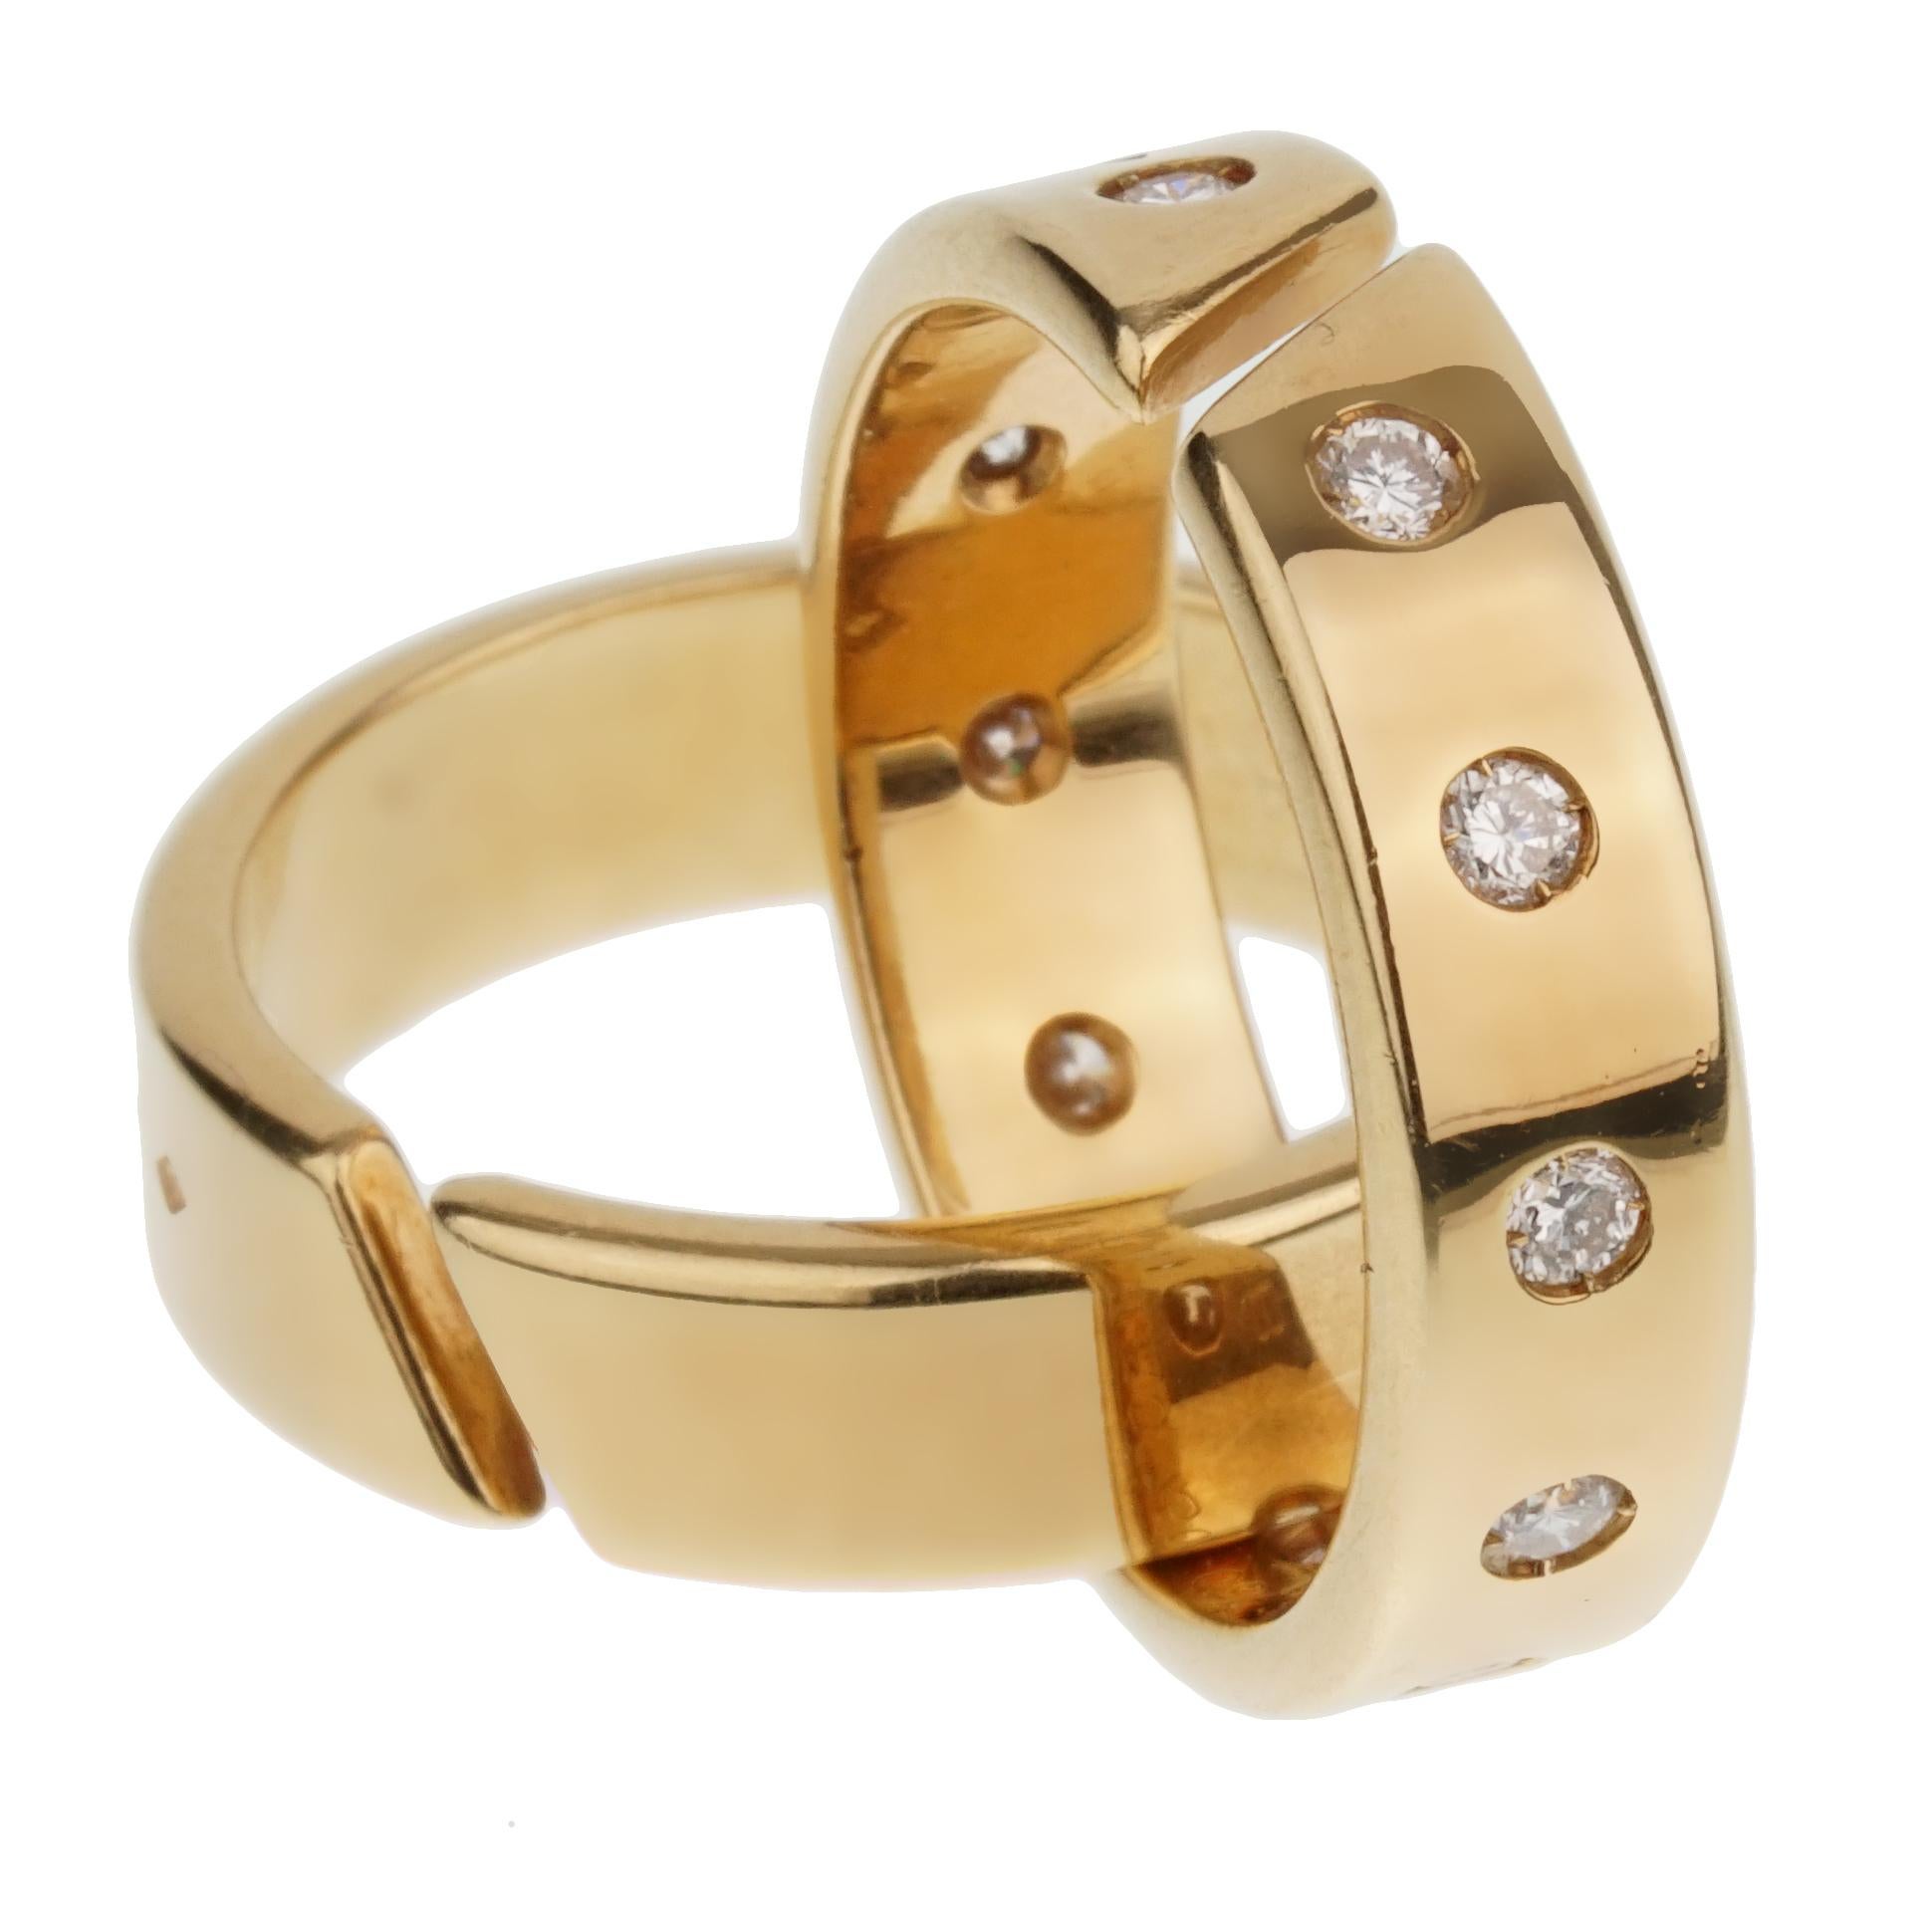 Ein fabelhafter Hermes Rolling Ring mit 1 Band, besetzt mit original Hermes Diamanten im runden Brillantschliff, verflochten mit einem schlichten Band. Jedes Band ist vollständig gestempelt die Ringe misst eine Größe 51 eu.